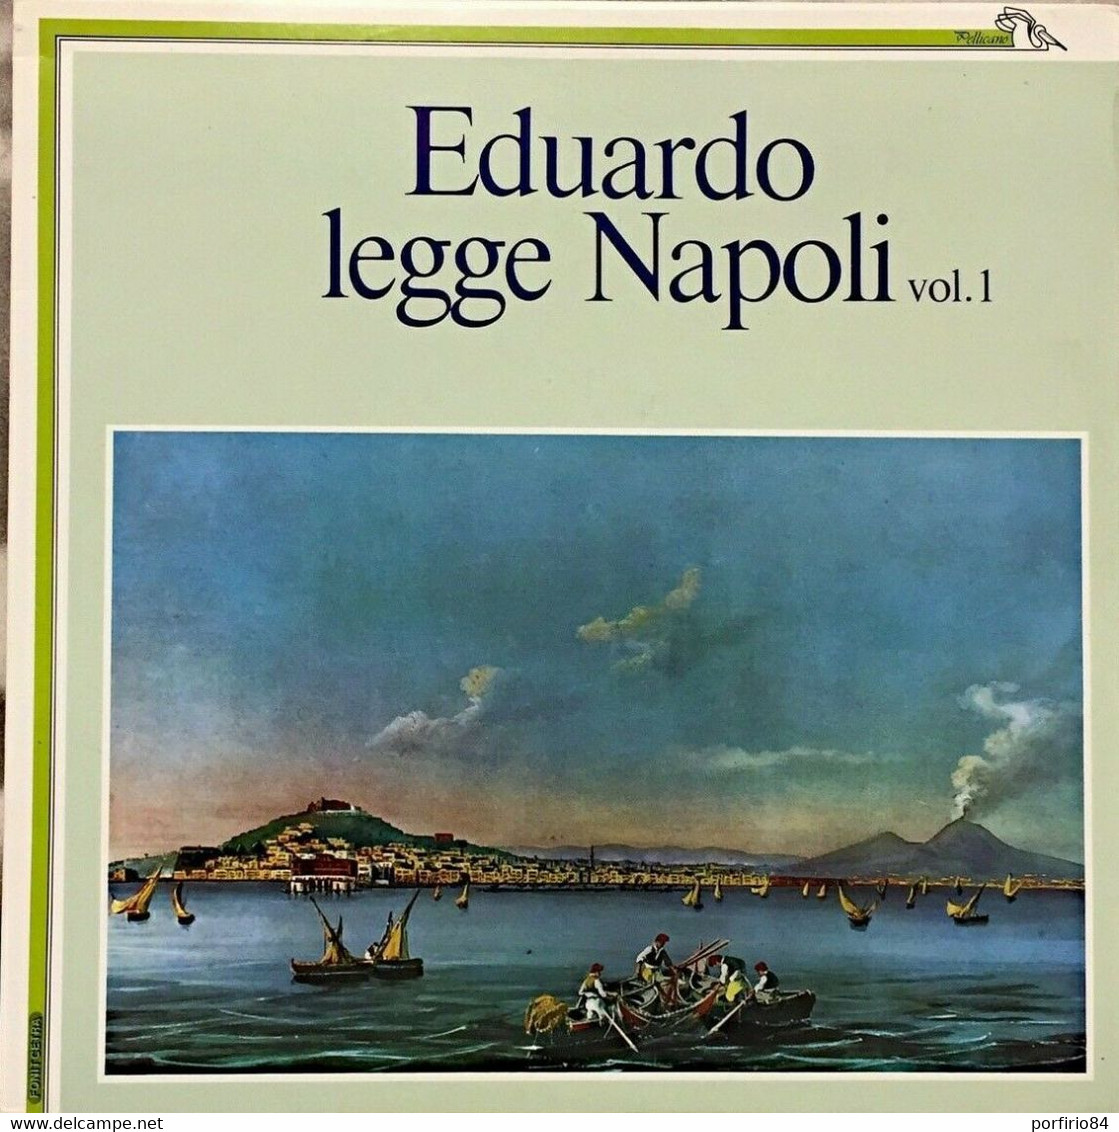 EDUARDO DE FILIPPO RARO LP - EDUARDO LEGGE NAPOLI VOL. 1 SALVATORE DI GIACOMO - Sonstige - Italienische Musik